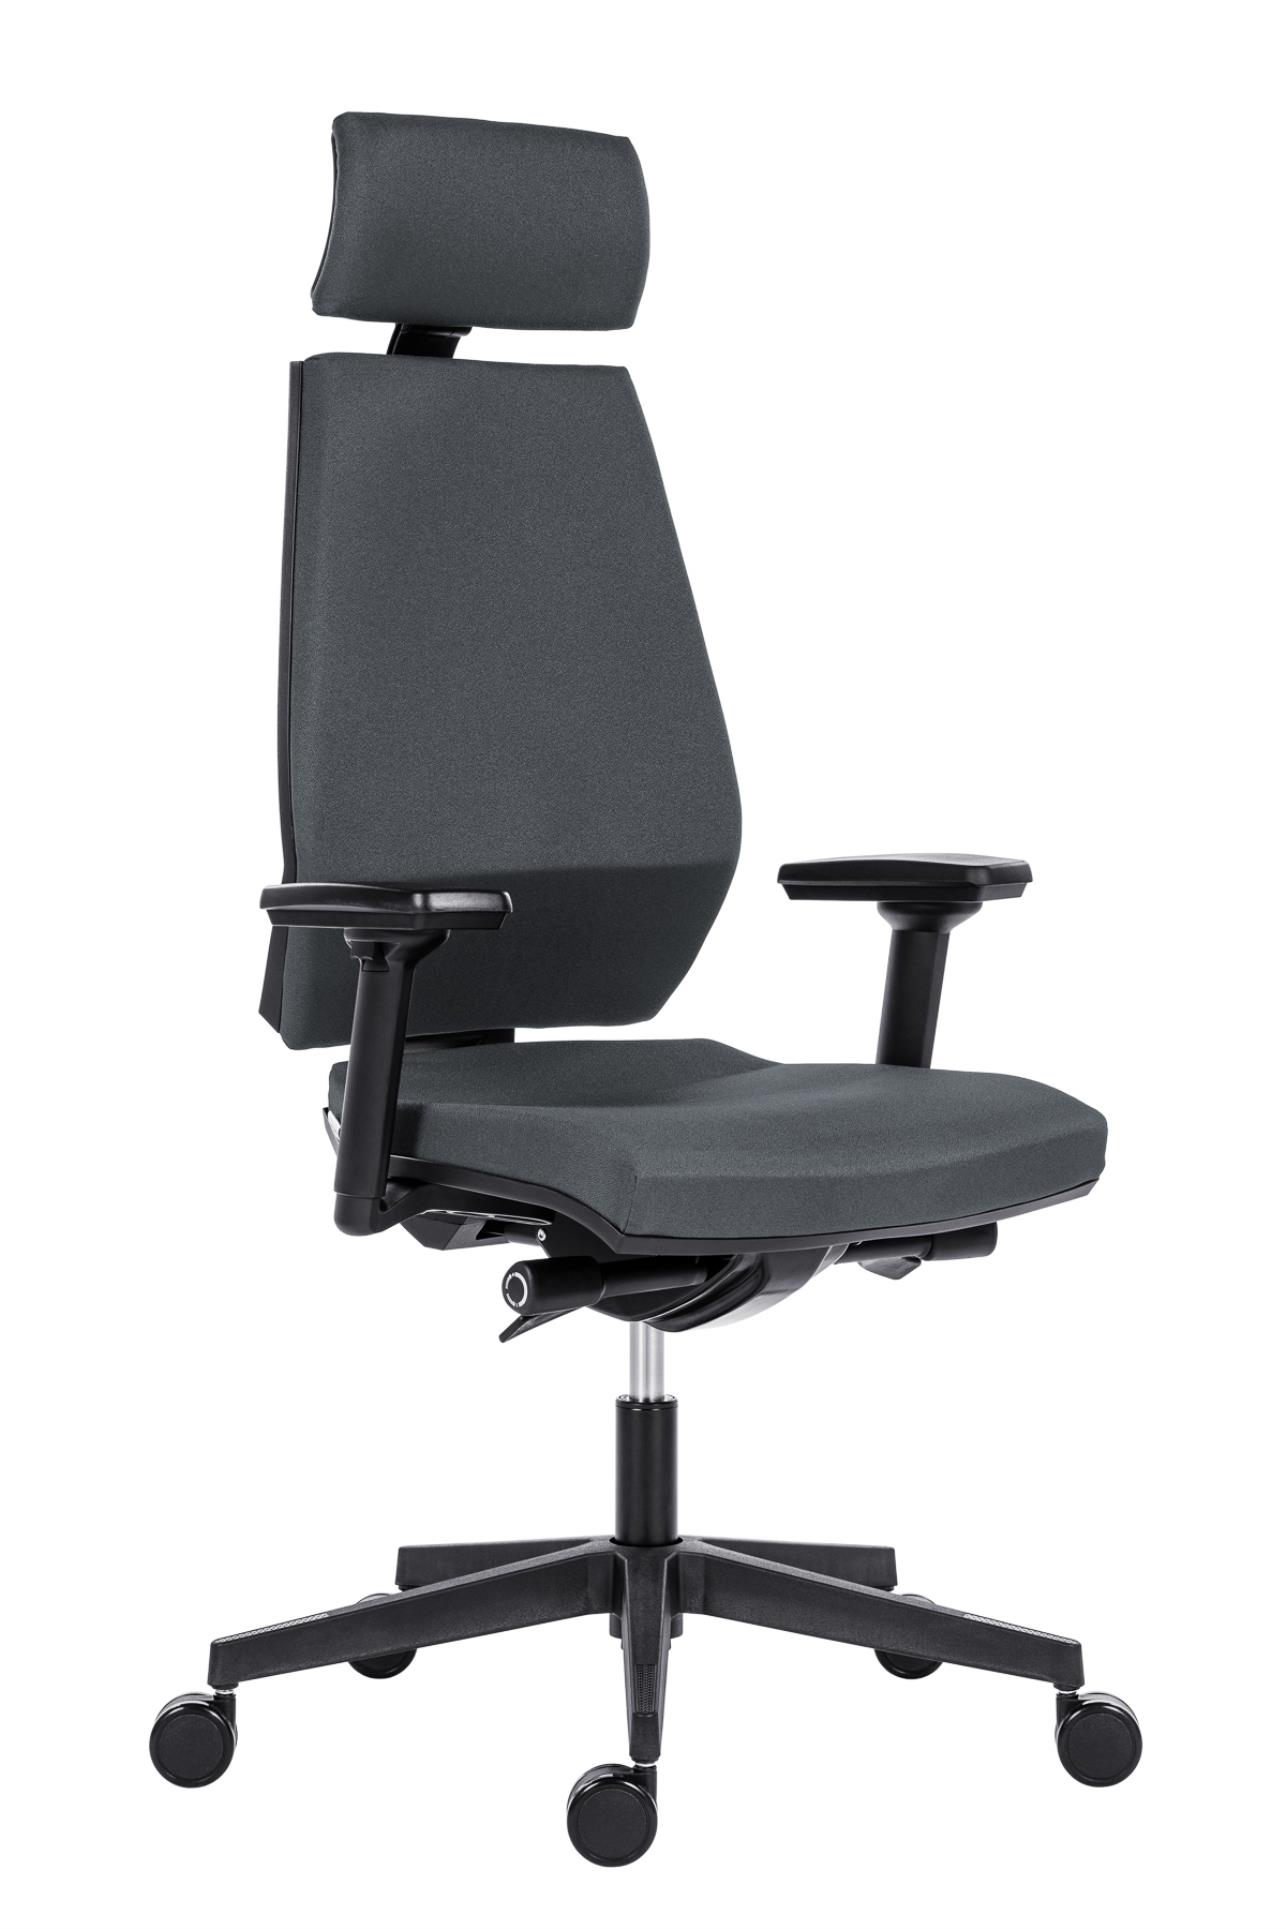 Antares Kancelářská židle Motion PDH - synchro, šedá